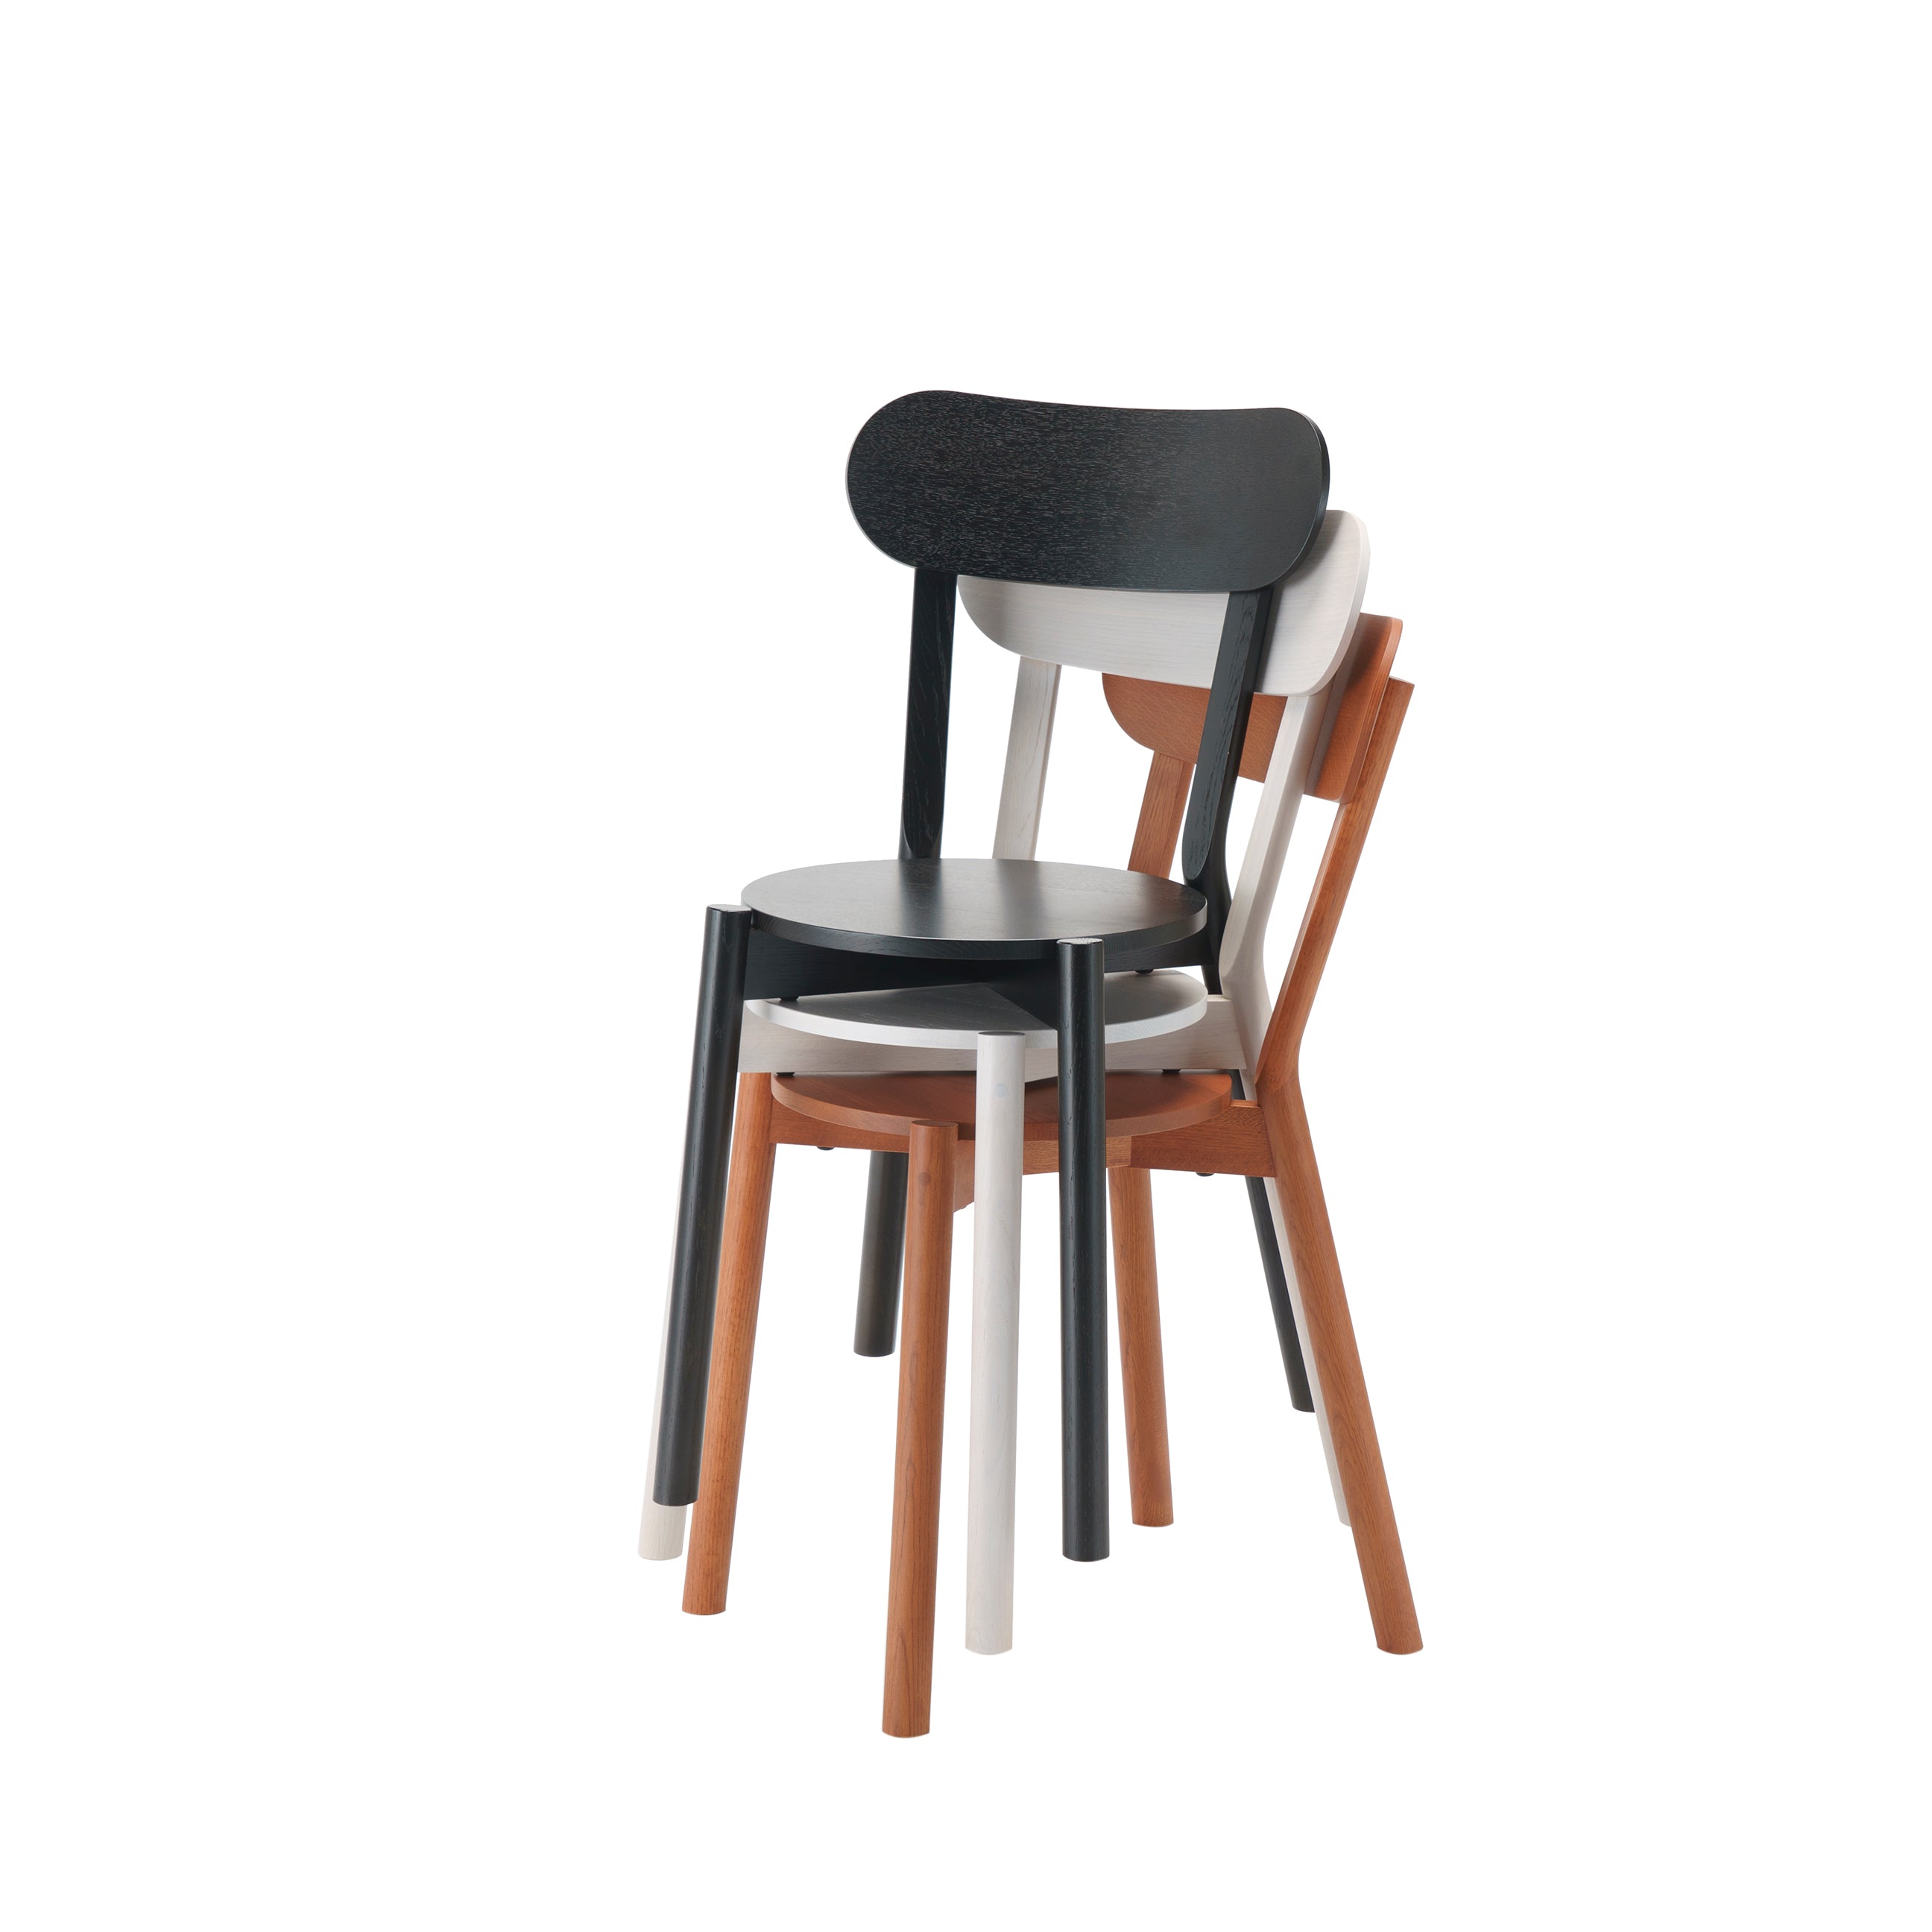 Castor Chair Stacking: Black Oak + Grain Powder White + Terracotta